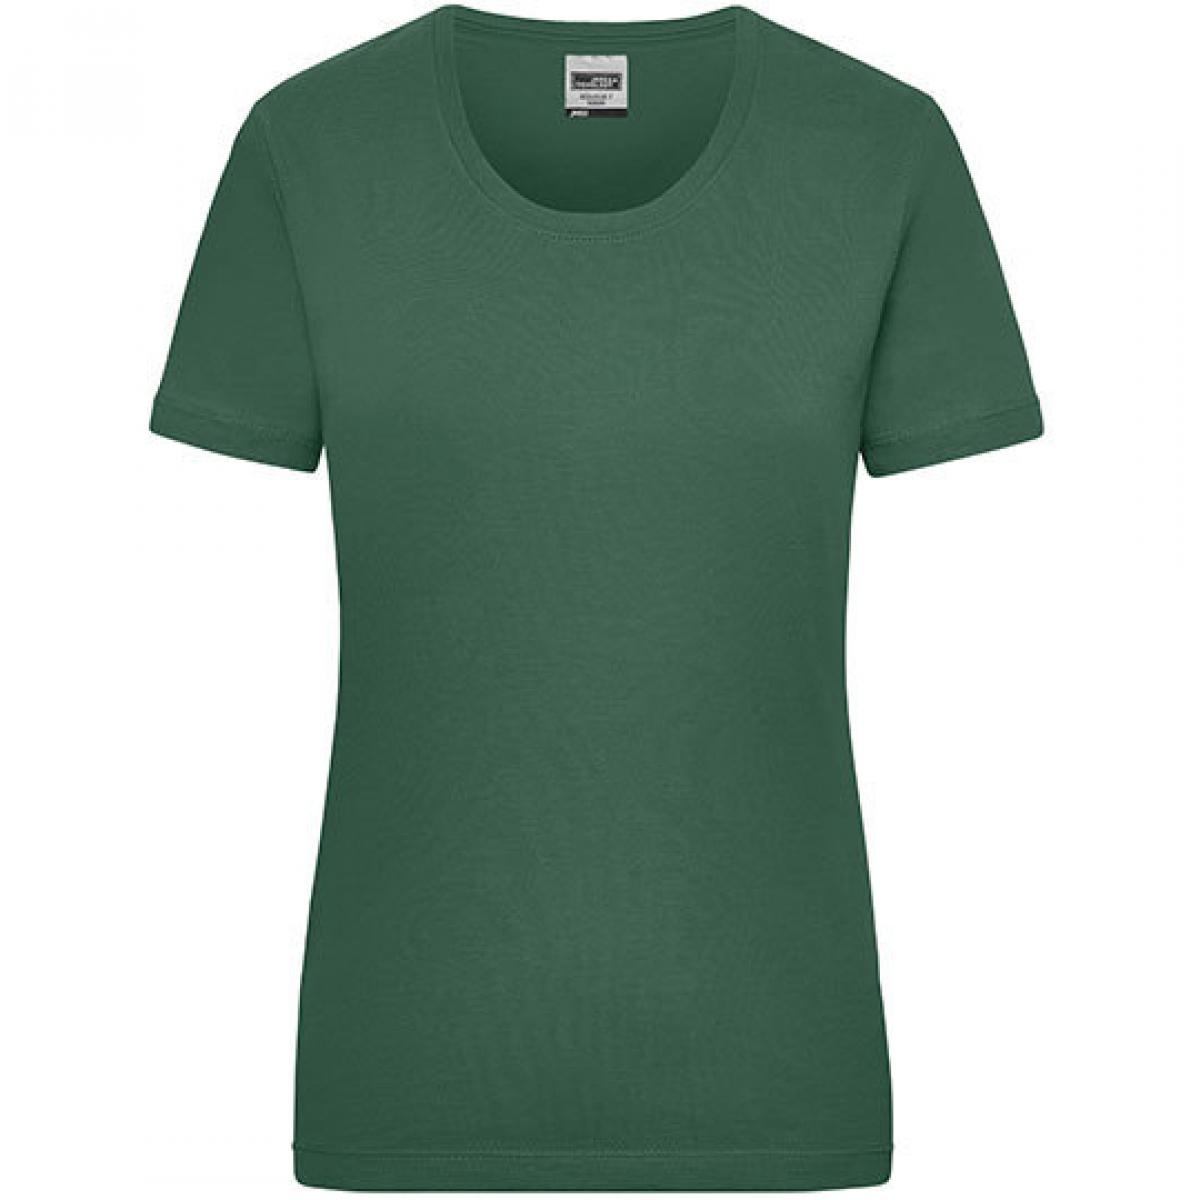 Hersteller: James+Nicholson Herstellernummer: JN 802 Artikelbezeichnung: Workwear-T Women Damen T-Shirt Farbe: Dark Green